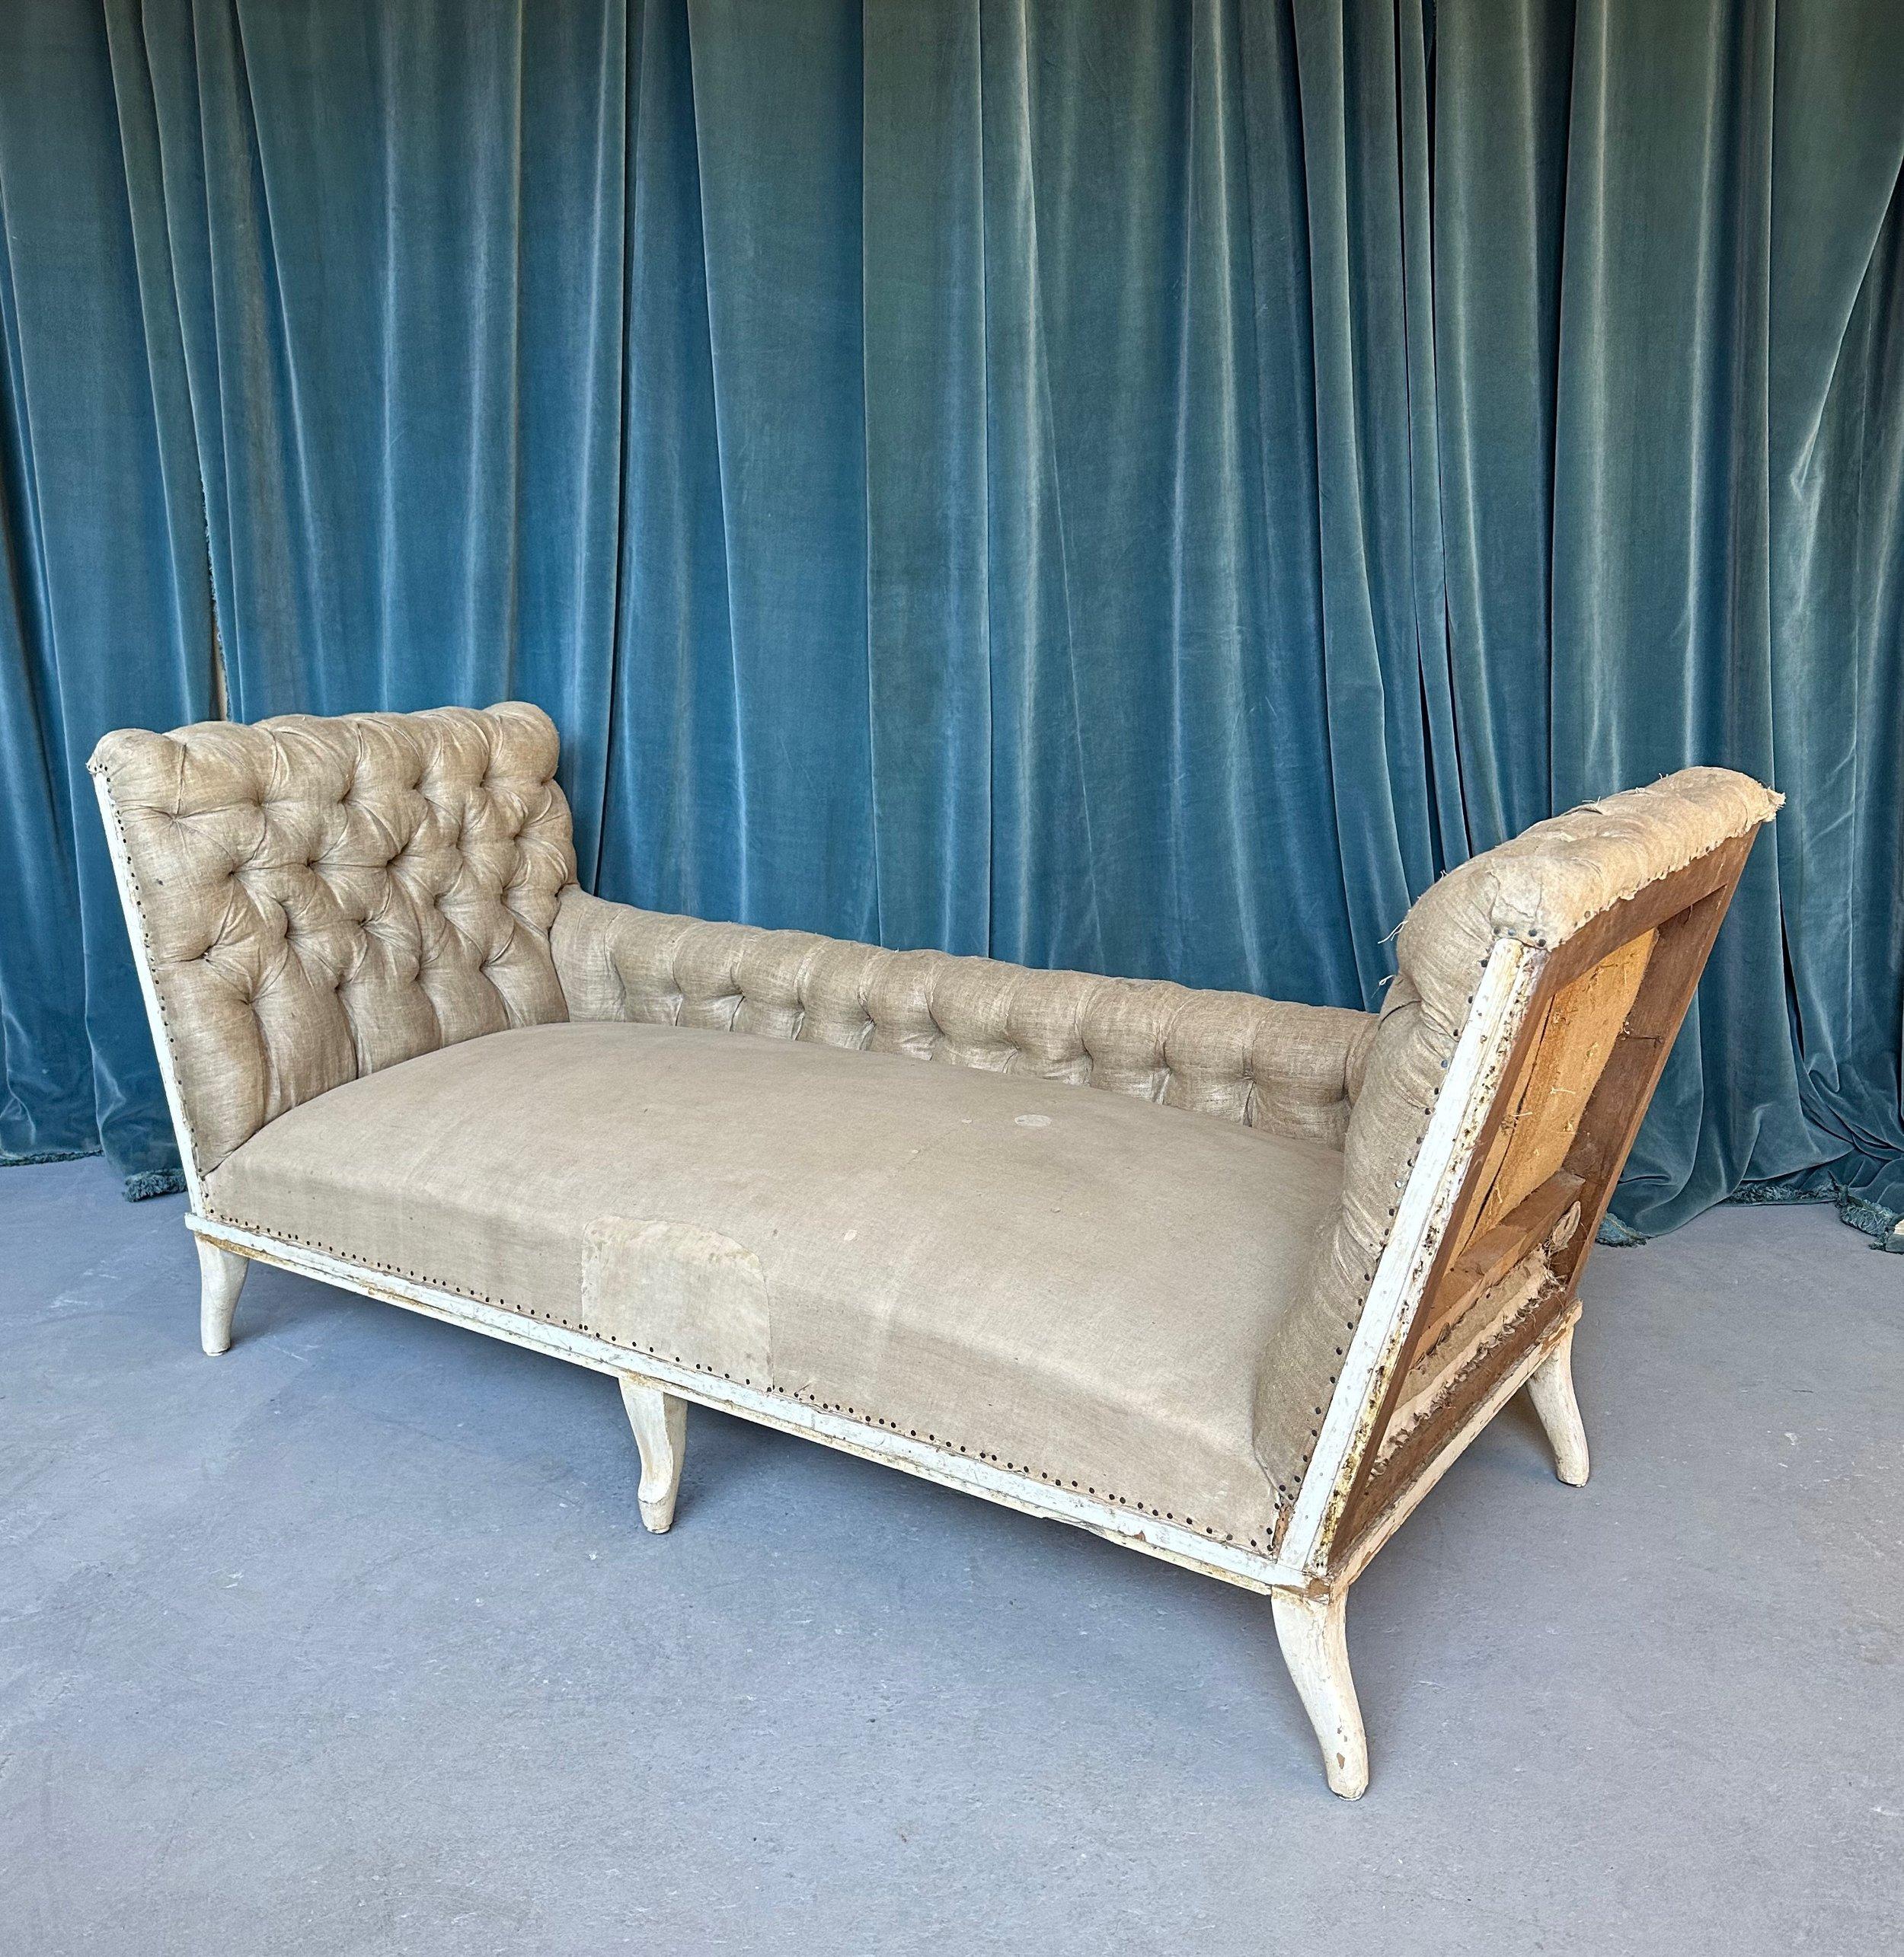 Dieses einzigartige und stattliche französische Sofa Napoleon III aus dem 19. Jahrhundert zeichnet sich durch seine anmutig verlängerten Armlehnen aus, die einen Kontrast zur niedrigen Rückenlehne bilden und dem Sofa eine ausgesprochen elegante